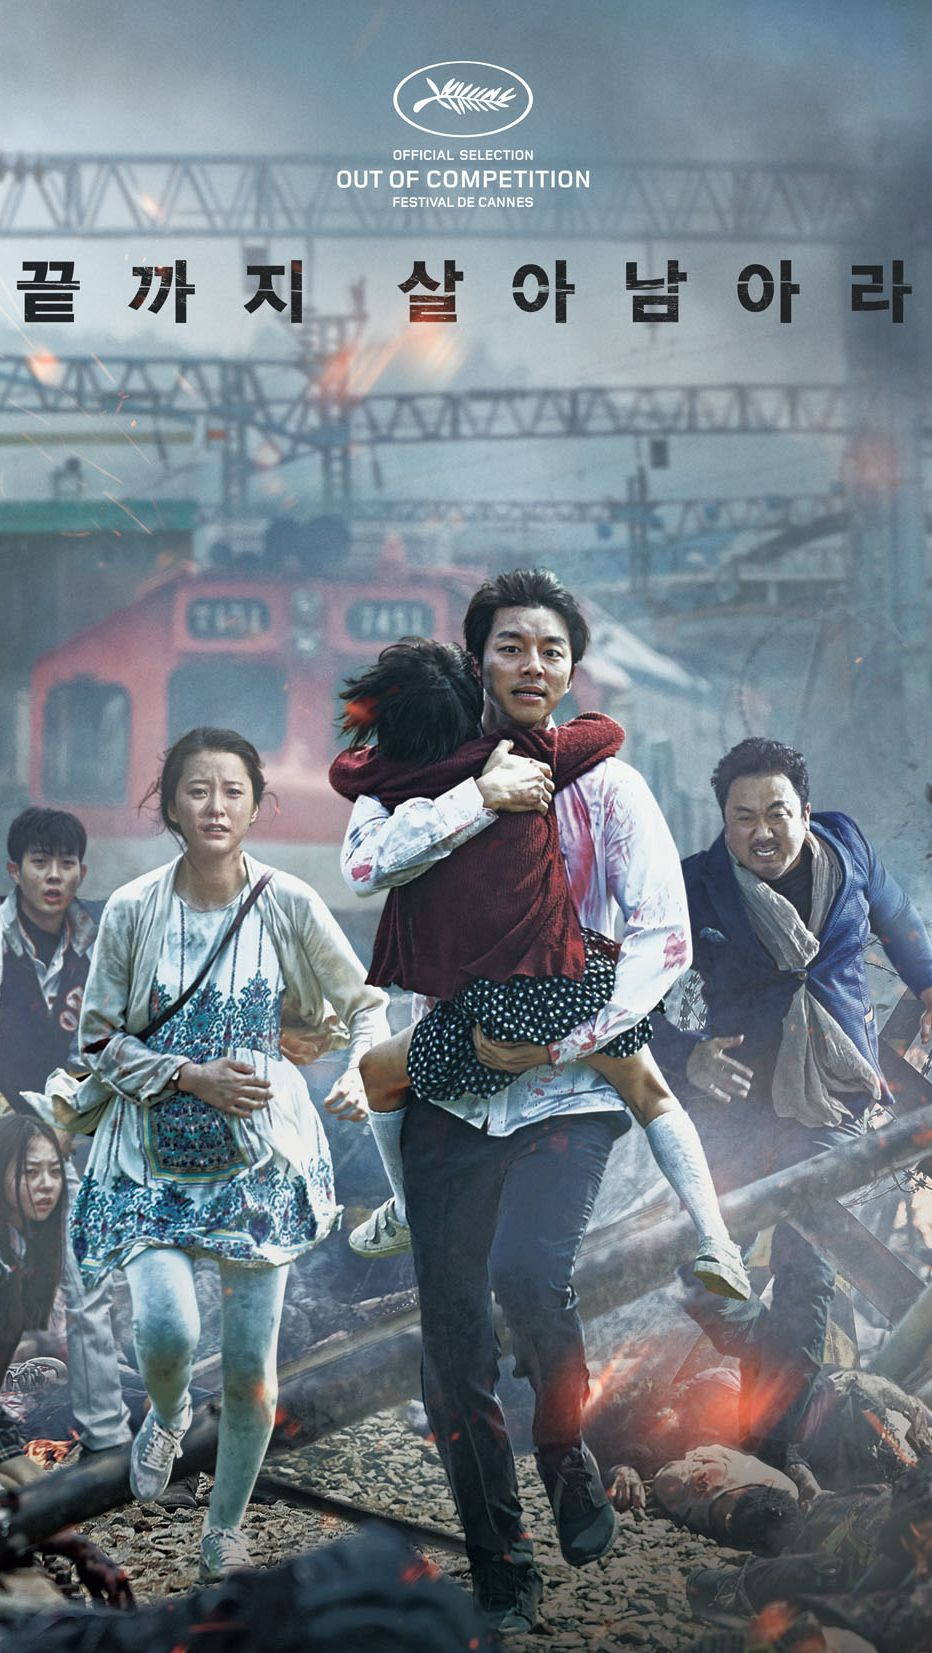 推荐一部韩国86高分丧尸灾难电影《釜山行》情节紧张,特效精良